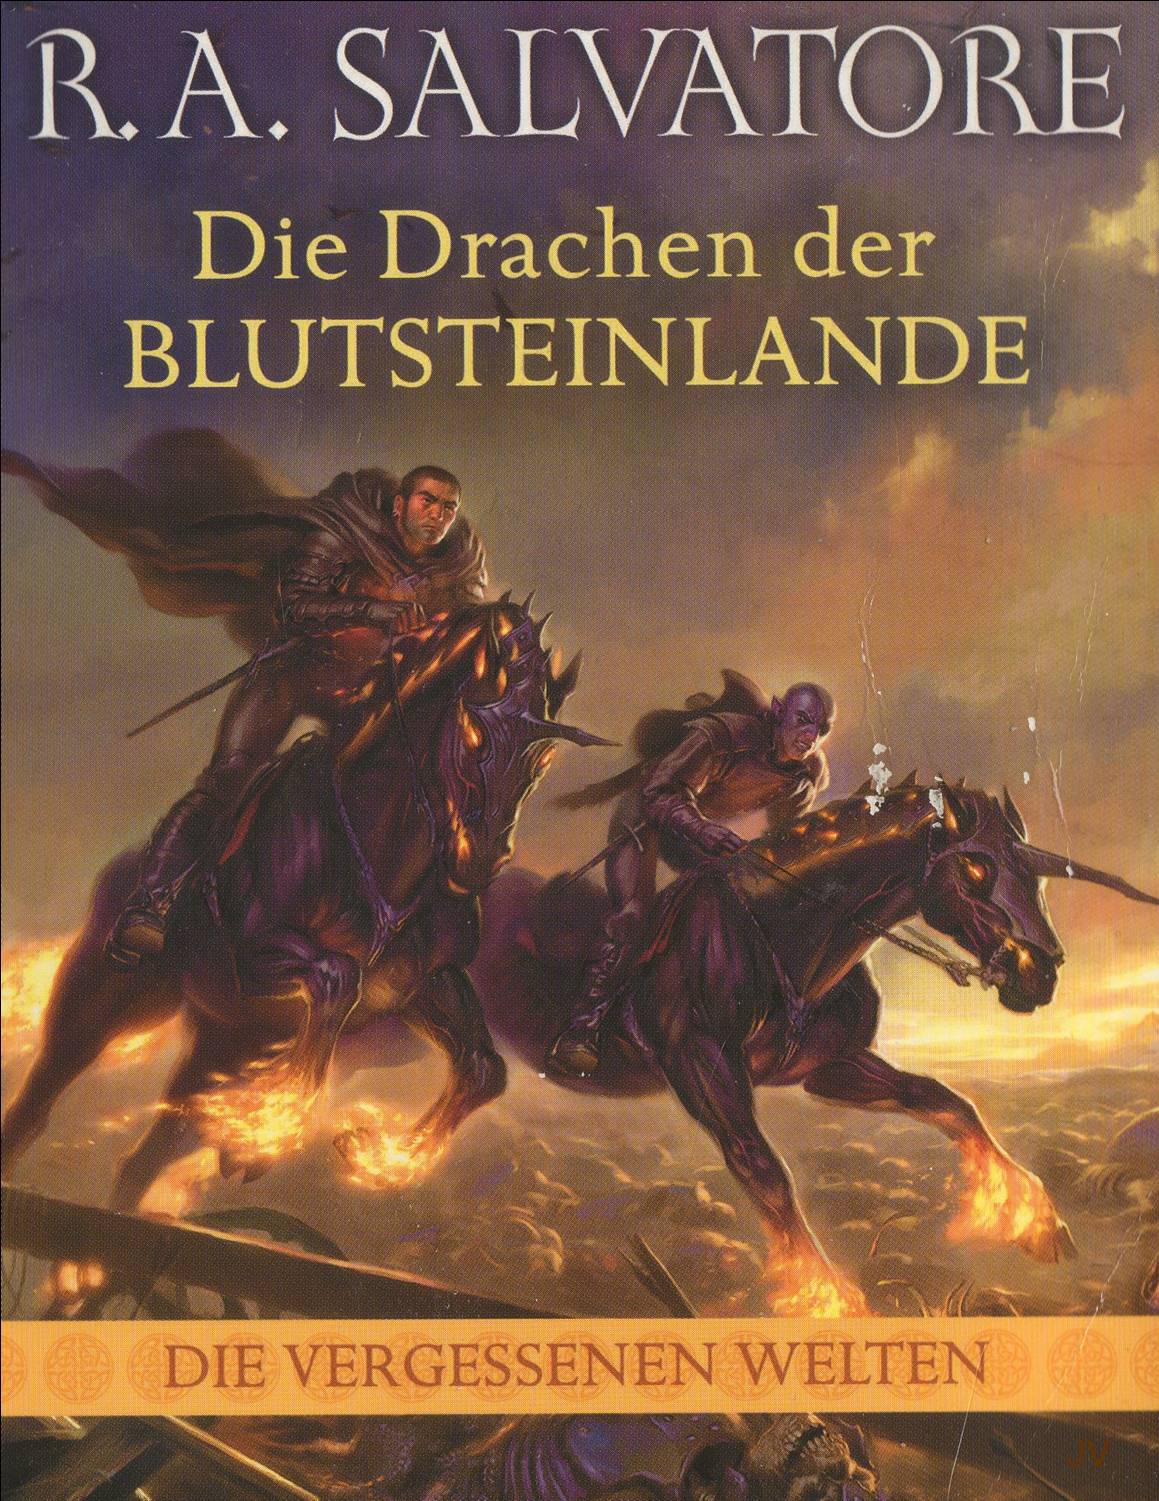 Cover zum Buch 'Die Drachen der Blutsteinlande' von R.A.Salvatore, fnfzehnter Teil der vergessene Reiche Saga